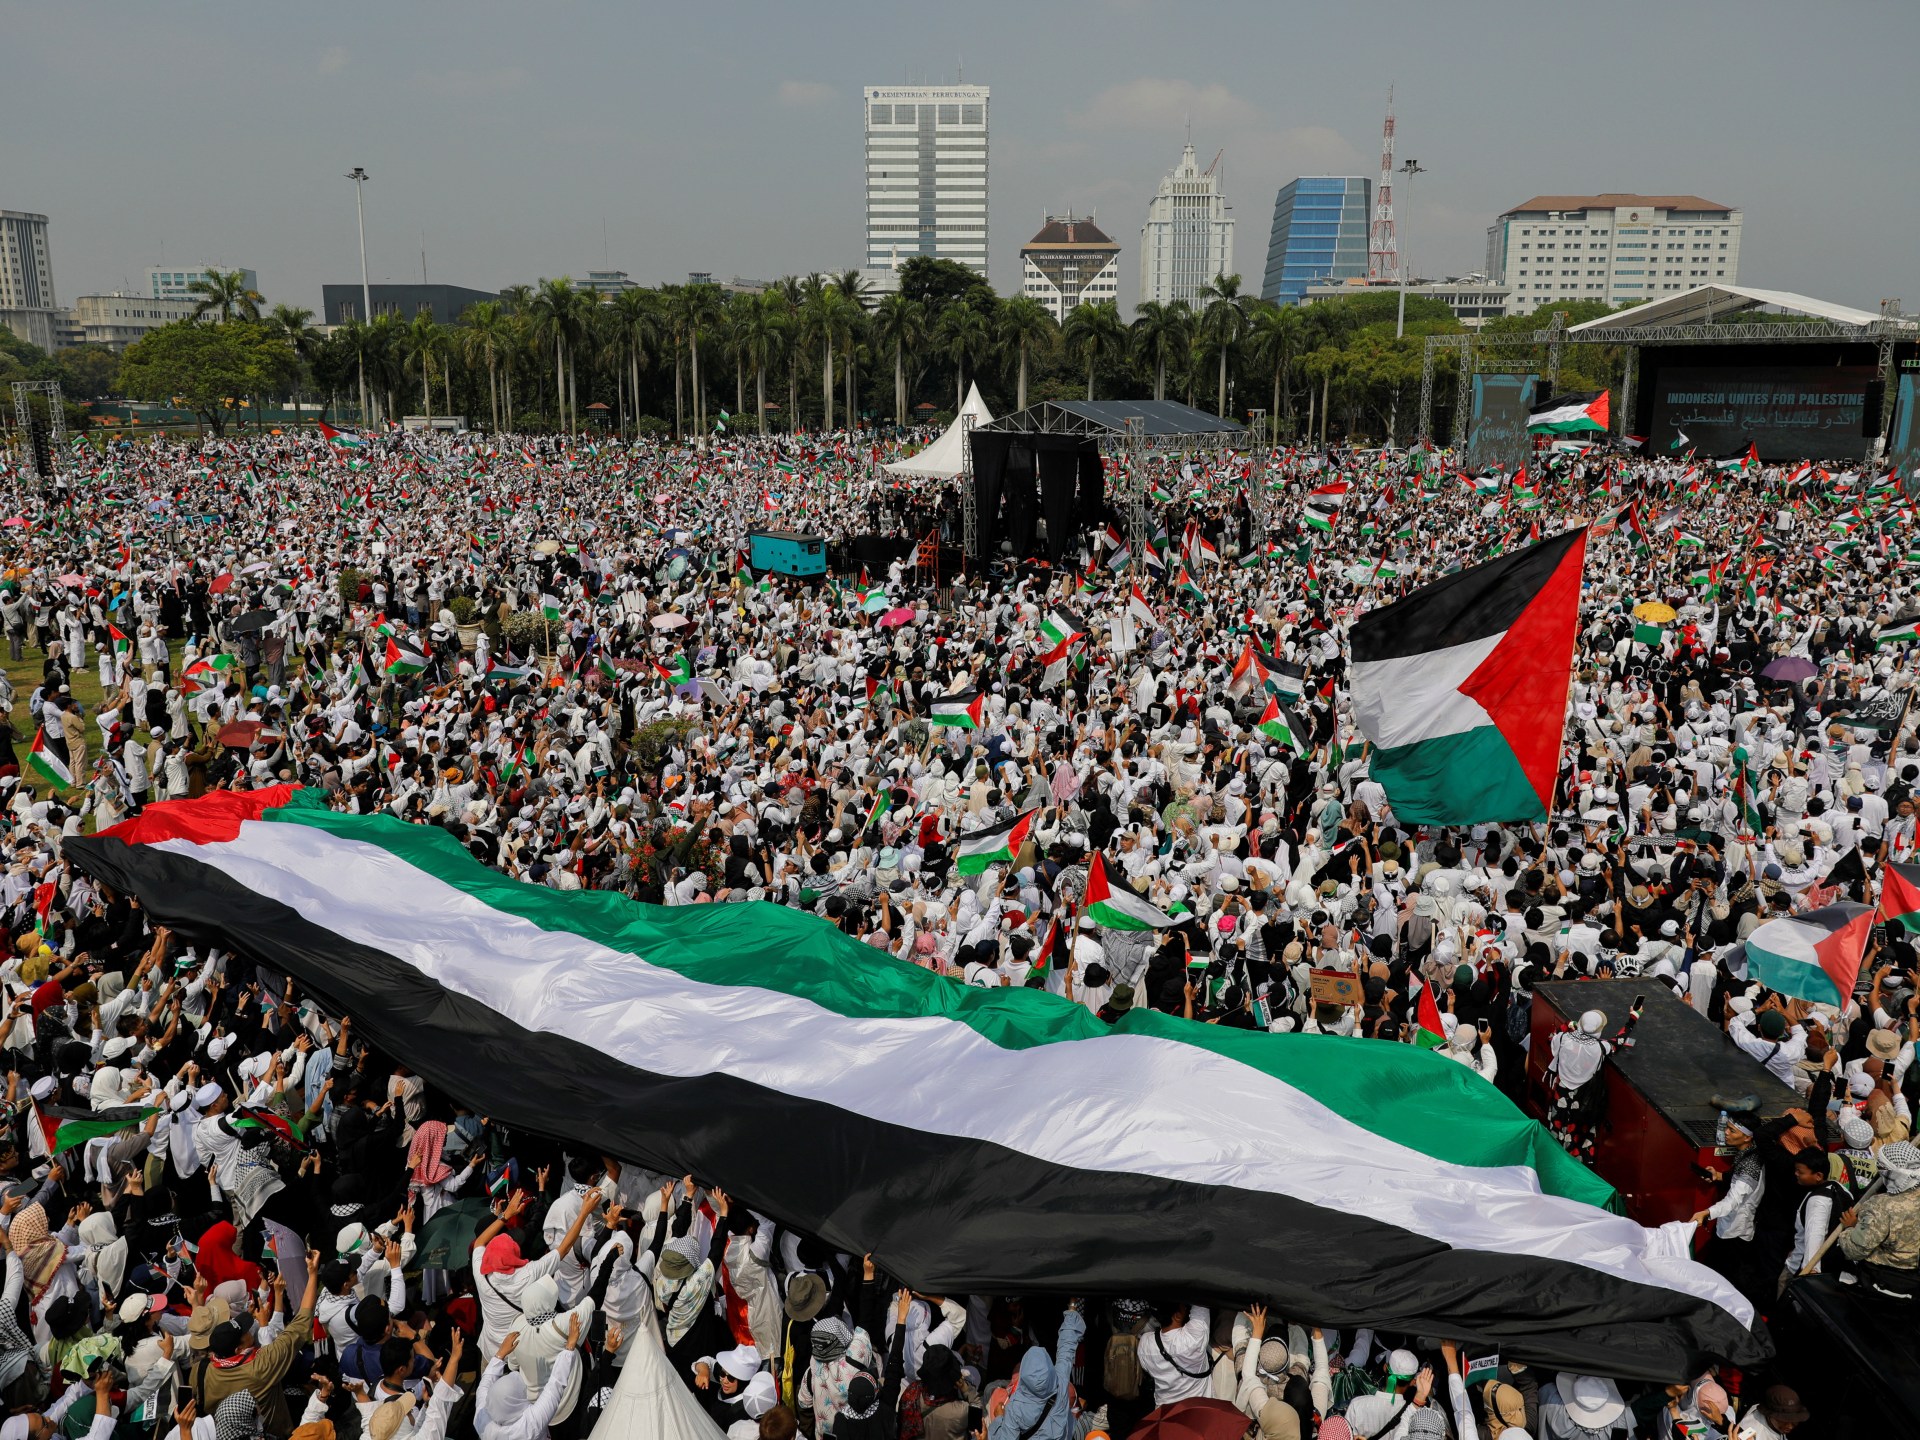 أكثر من مليون شخص يتظاهرون في جاكرتا دعما لغزة | أخبار – البوكس نيوز